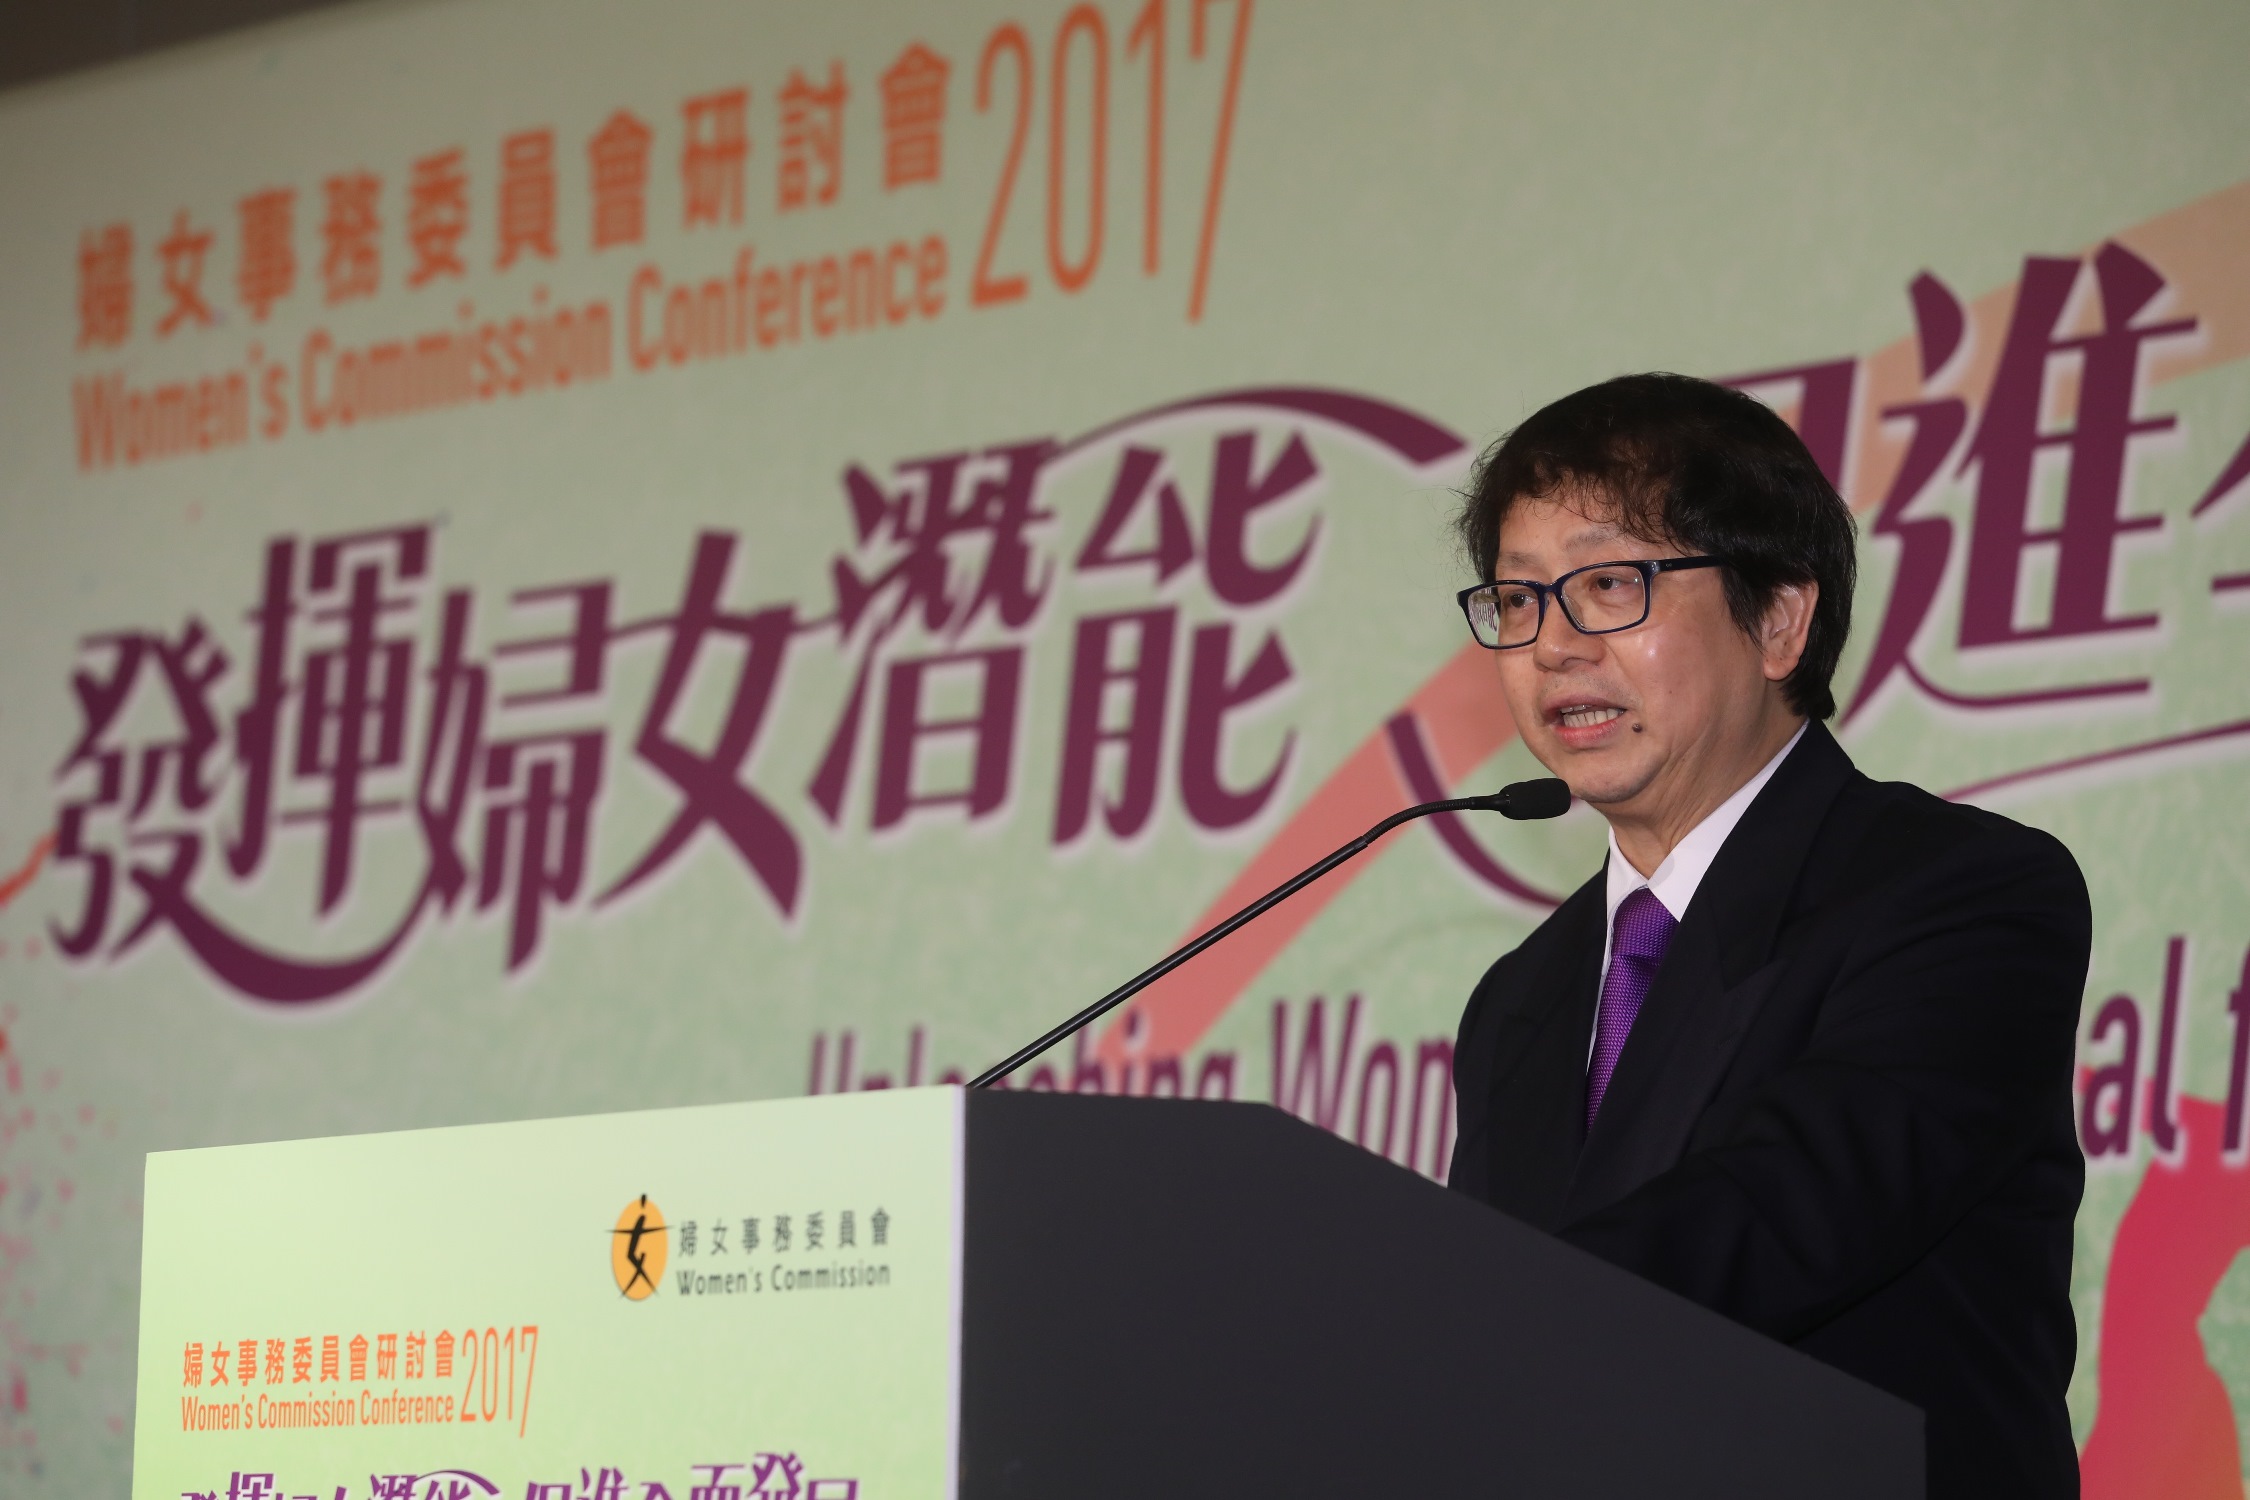 劳工及福利局局长萧伟强于2月21日出席妇女事务委员会研讨会2017，并在研讨会的全体会议上，就「HeForShe－男性在倡导改变的角色」发表专题演说。